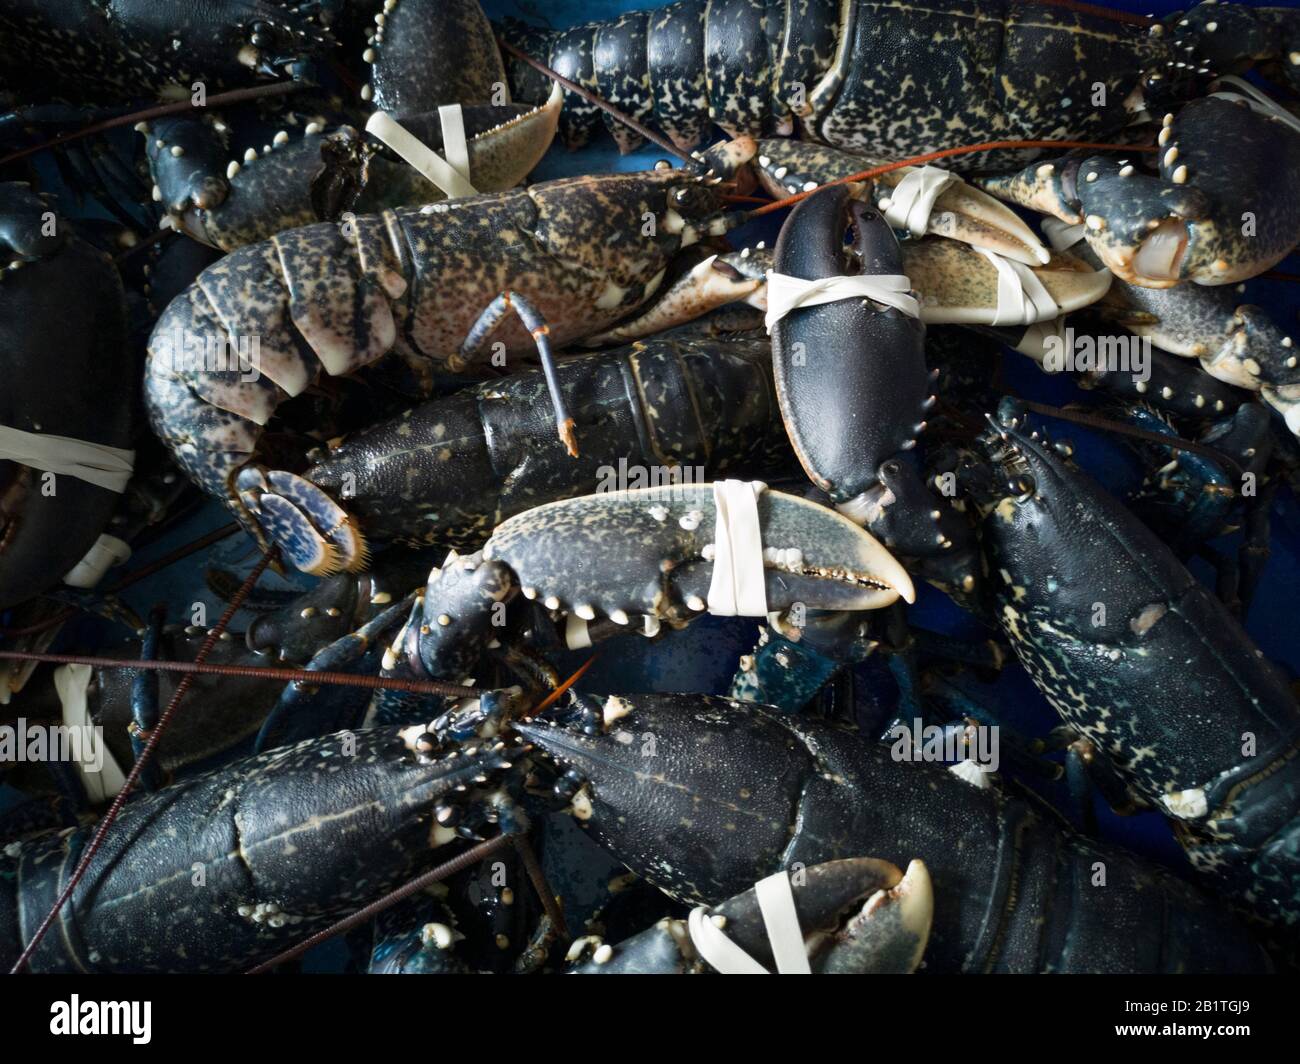 Live aragoste blu con tenaglie legate in attesa, Bretagna, Francia Foto Stock